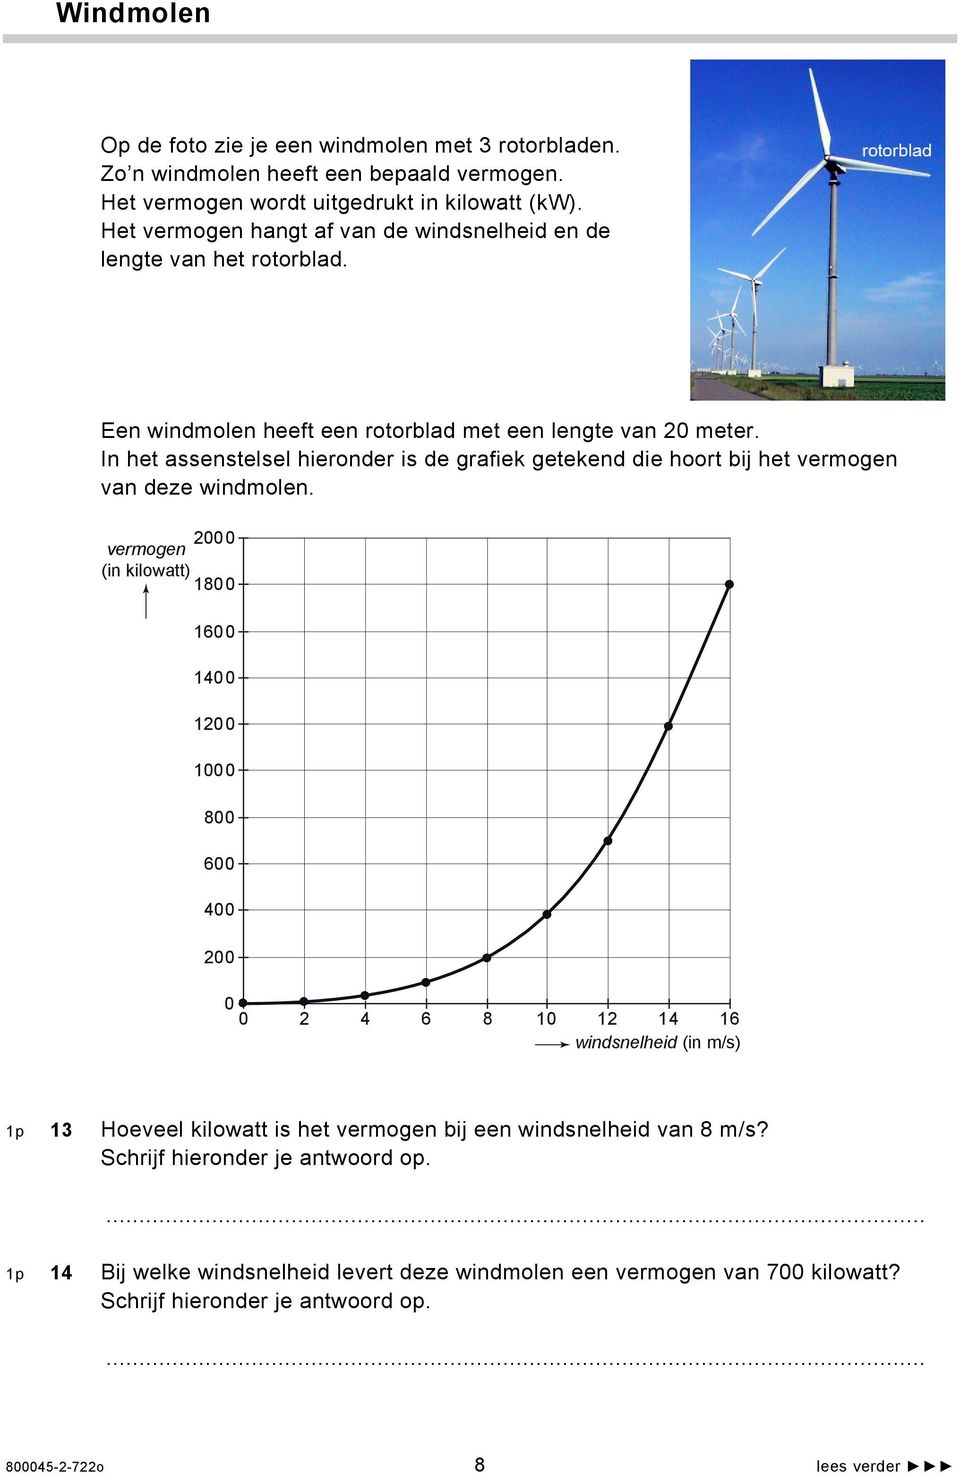 In het assenstelsel hieronder is de grafiek getekend die hoort bij het vermogen van deze windmolen.